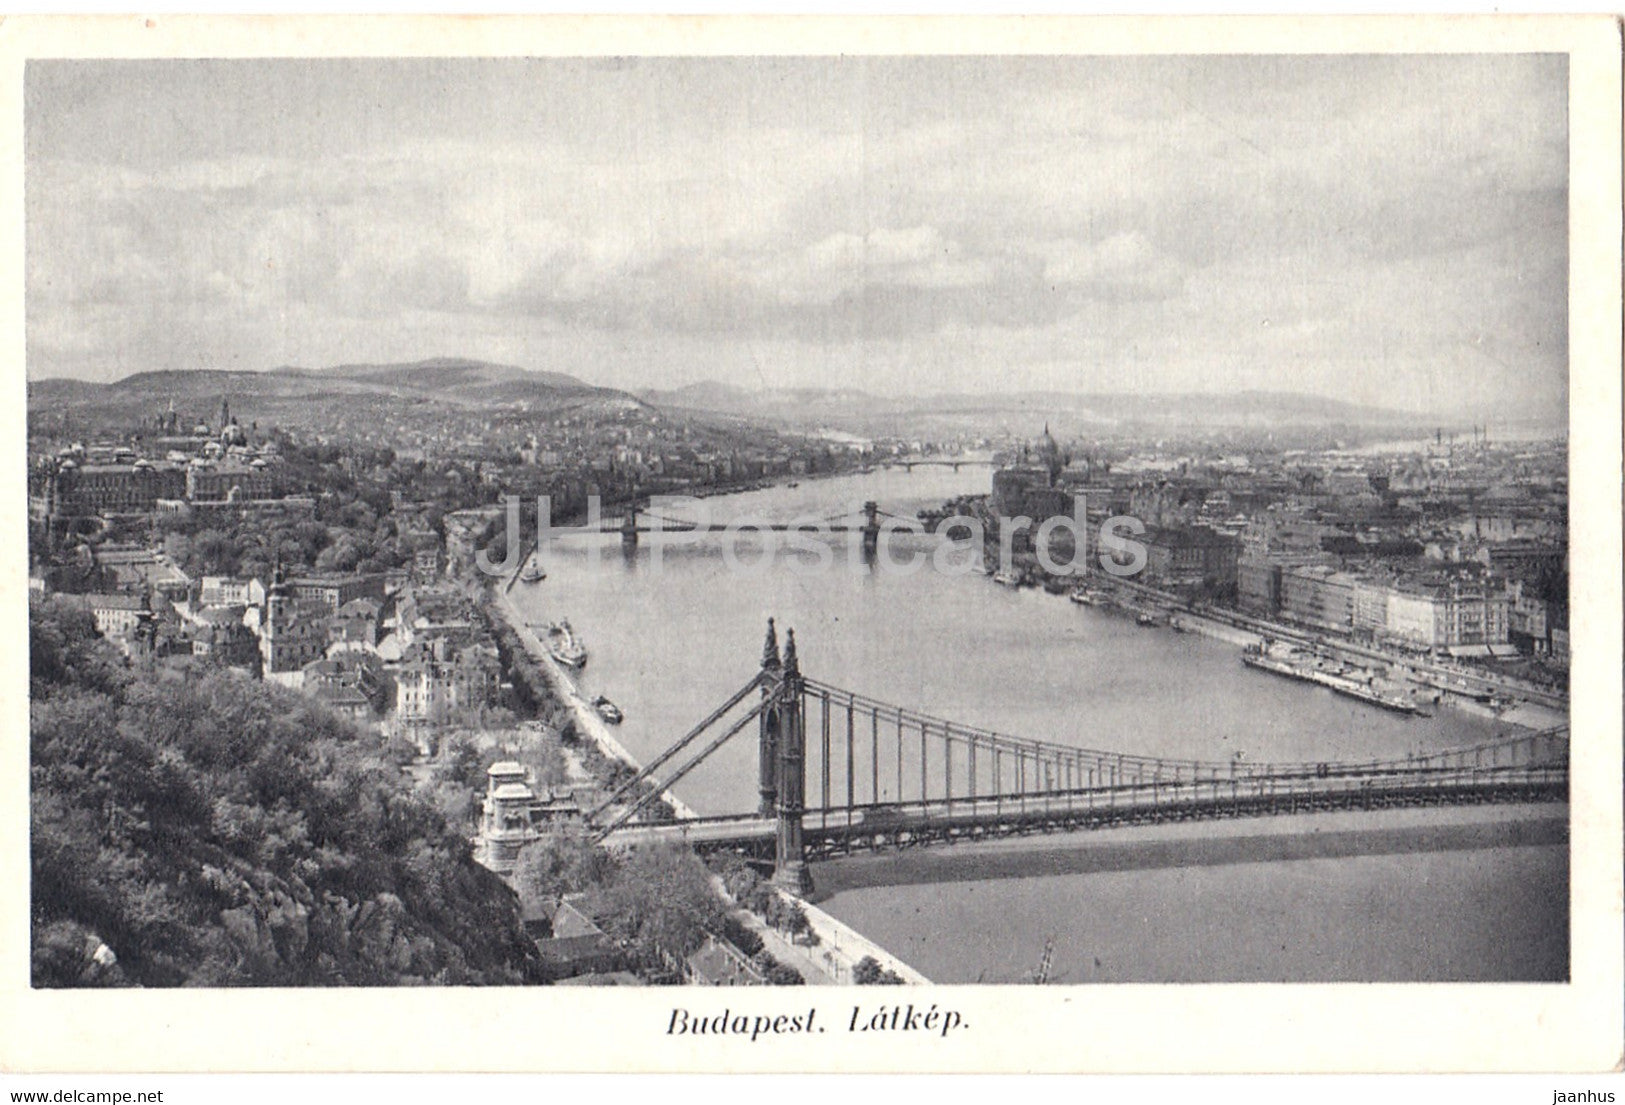 Budapest - Latkep - bridge - 44 - old postcard - Hungary - unused - JH Postcards